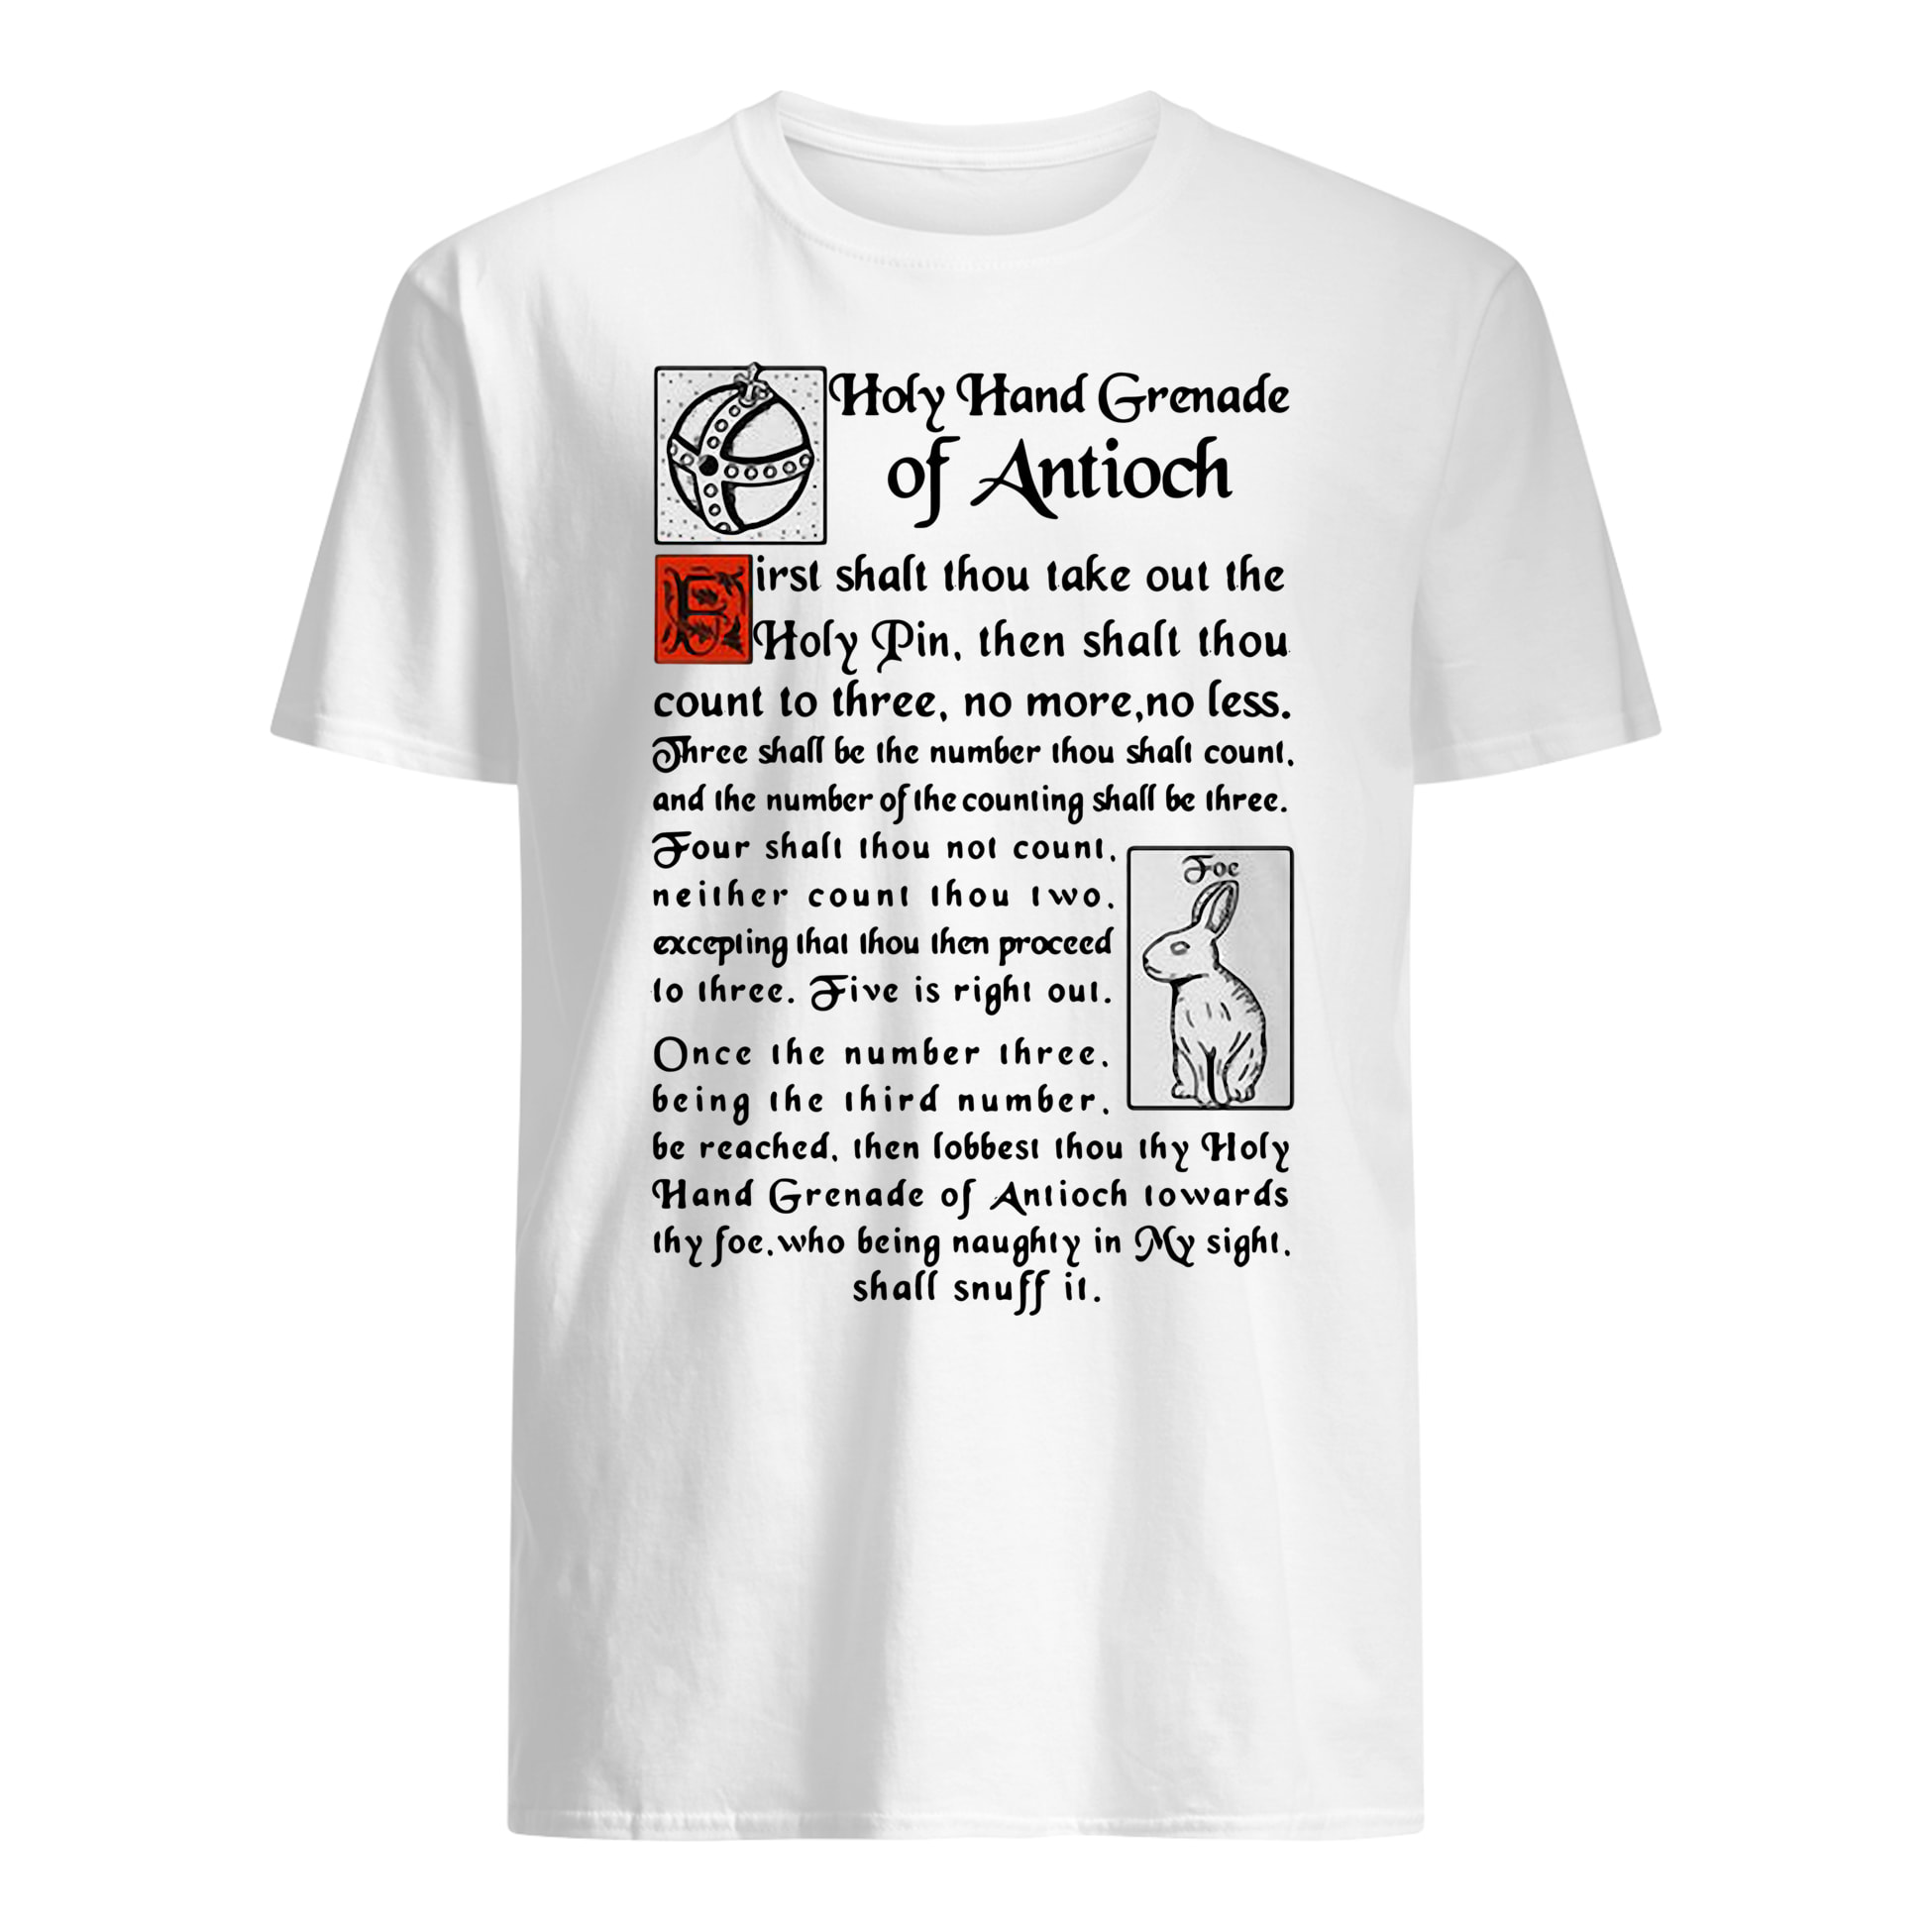 Holy Hand Grenade of Antioch shirt